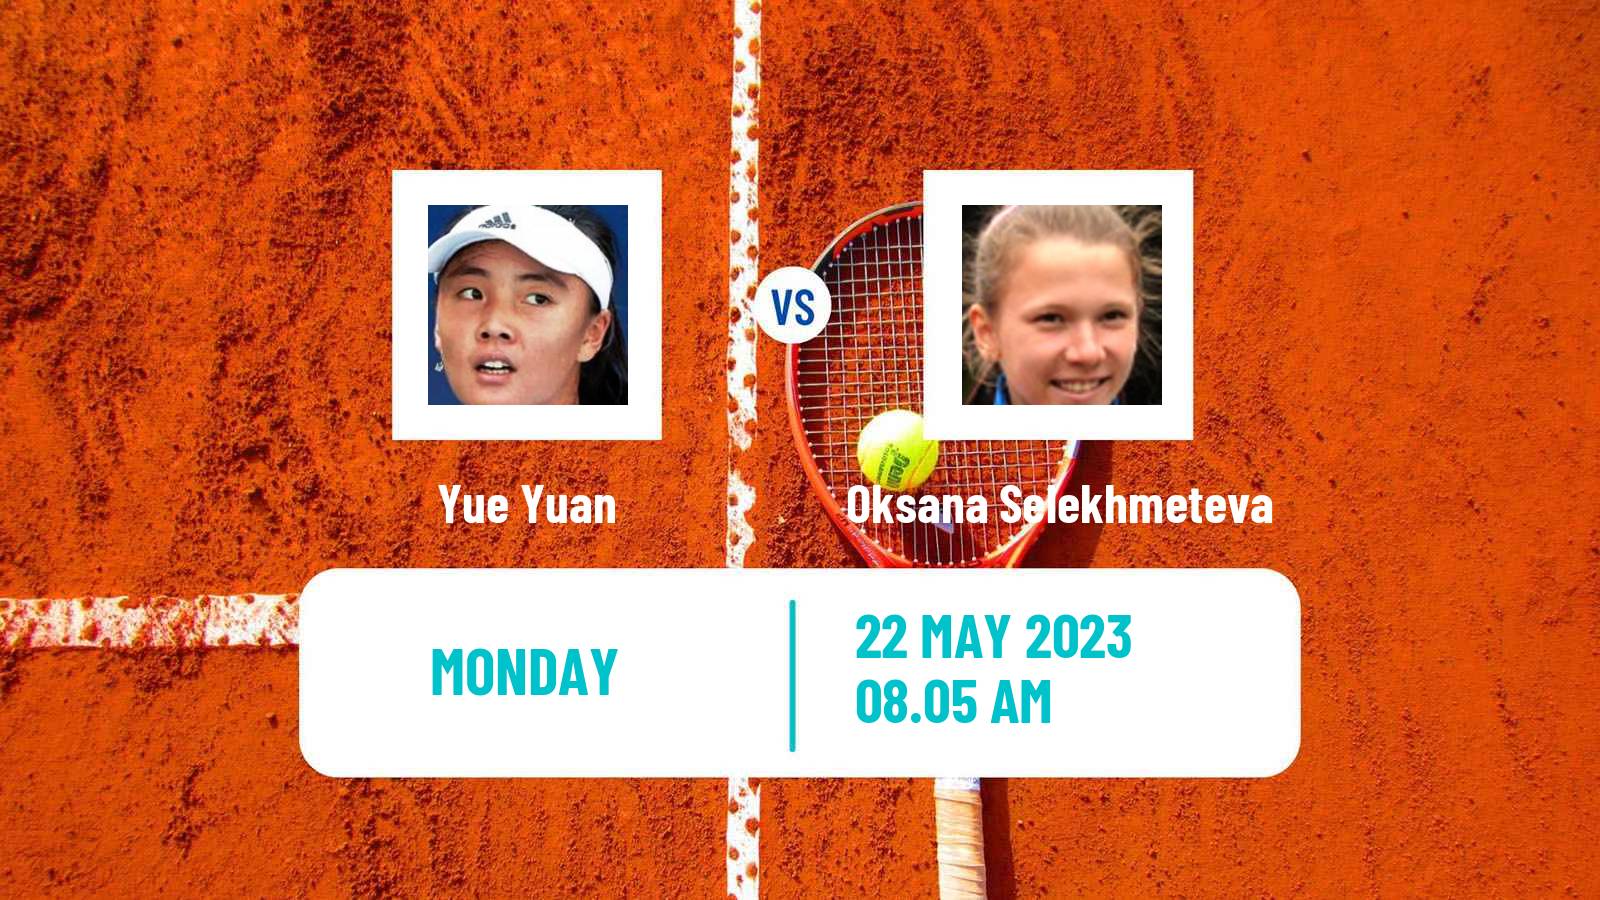 Tennis WTA Roland Garros Yue Yuan - Oksana Selekhmeteva